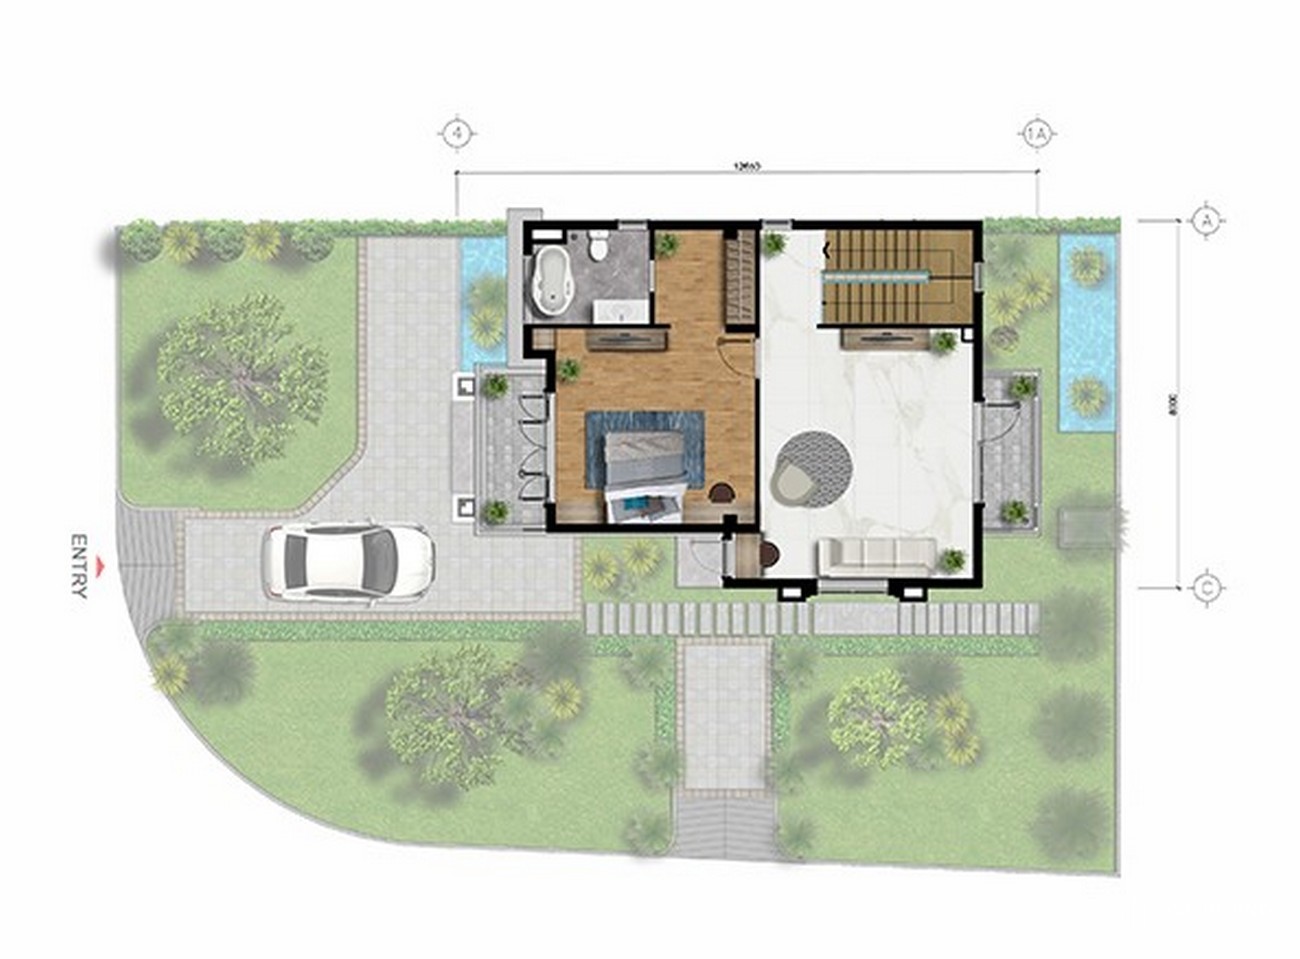 Mặt bằng tầng 3 căn biệt thự đơn lập của dự án West Lakes Golf & Villas